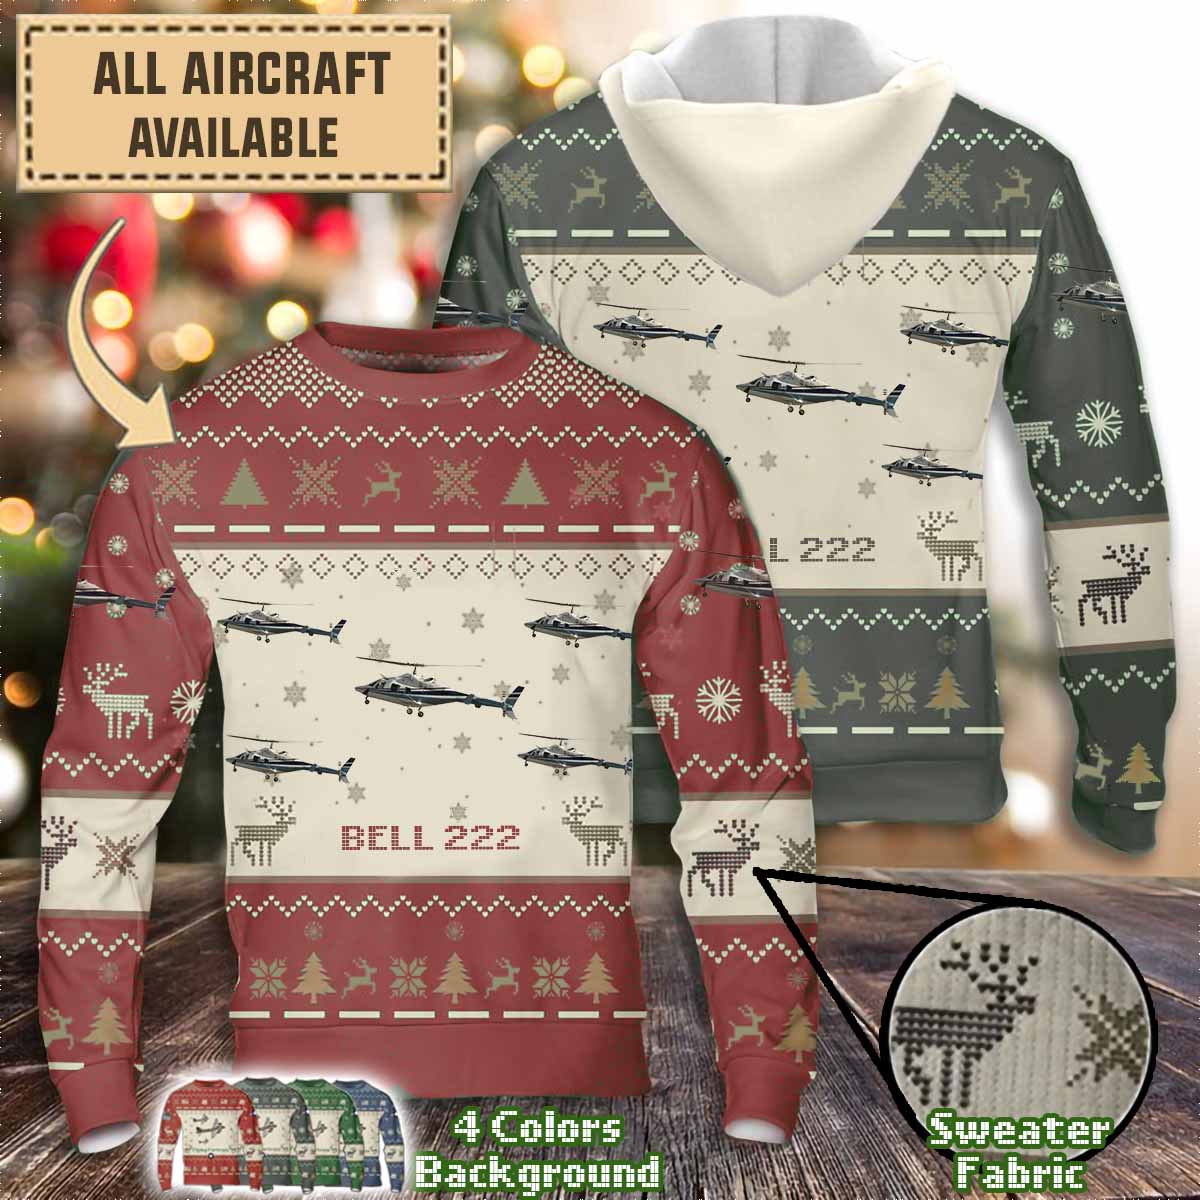 Bell 222_Aircraft Sweater